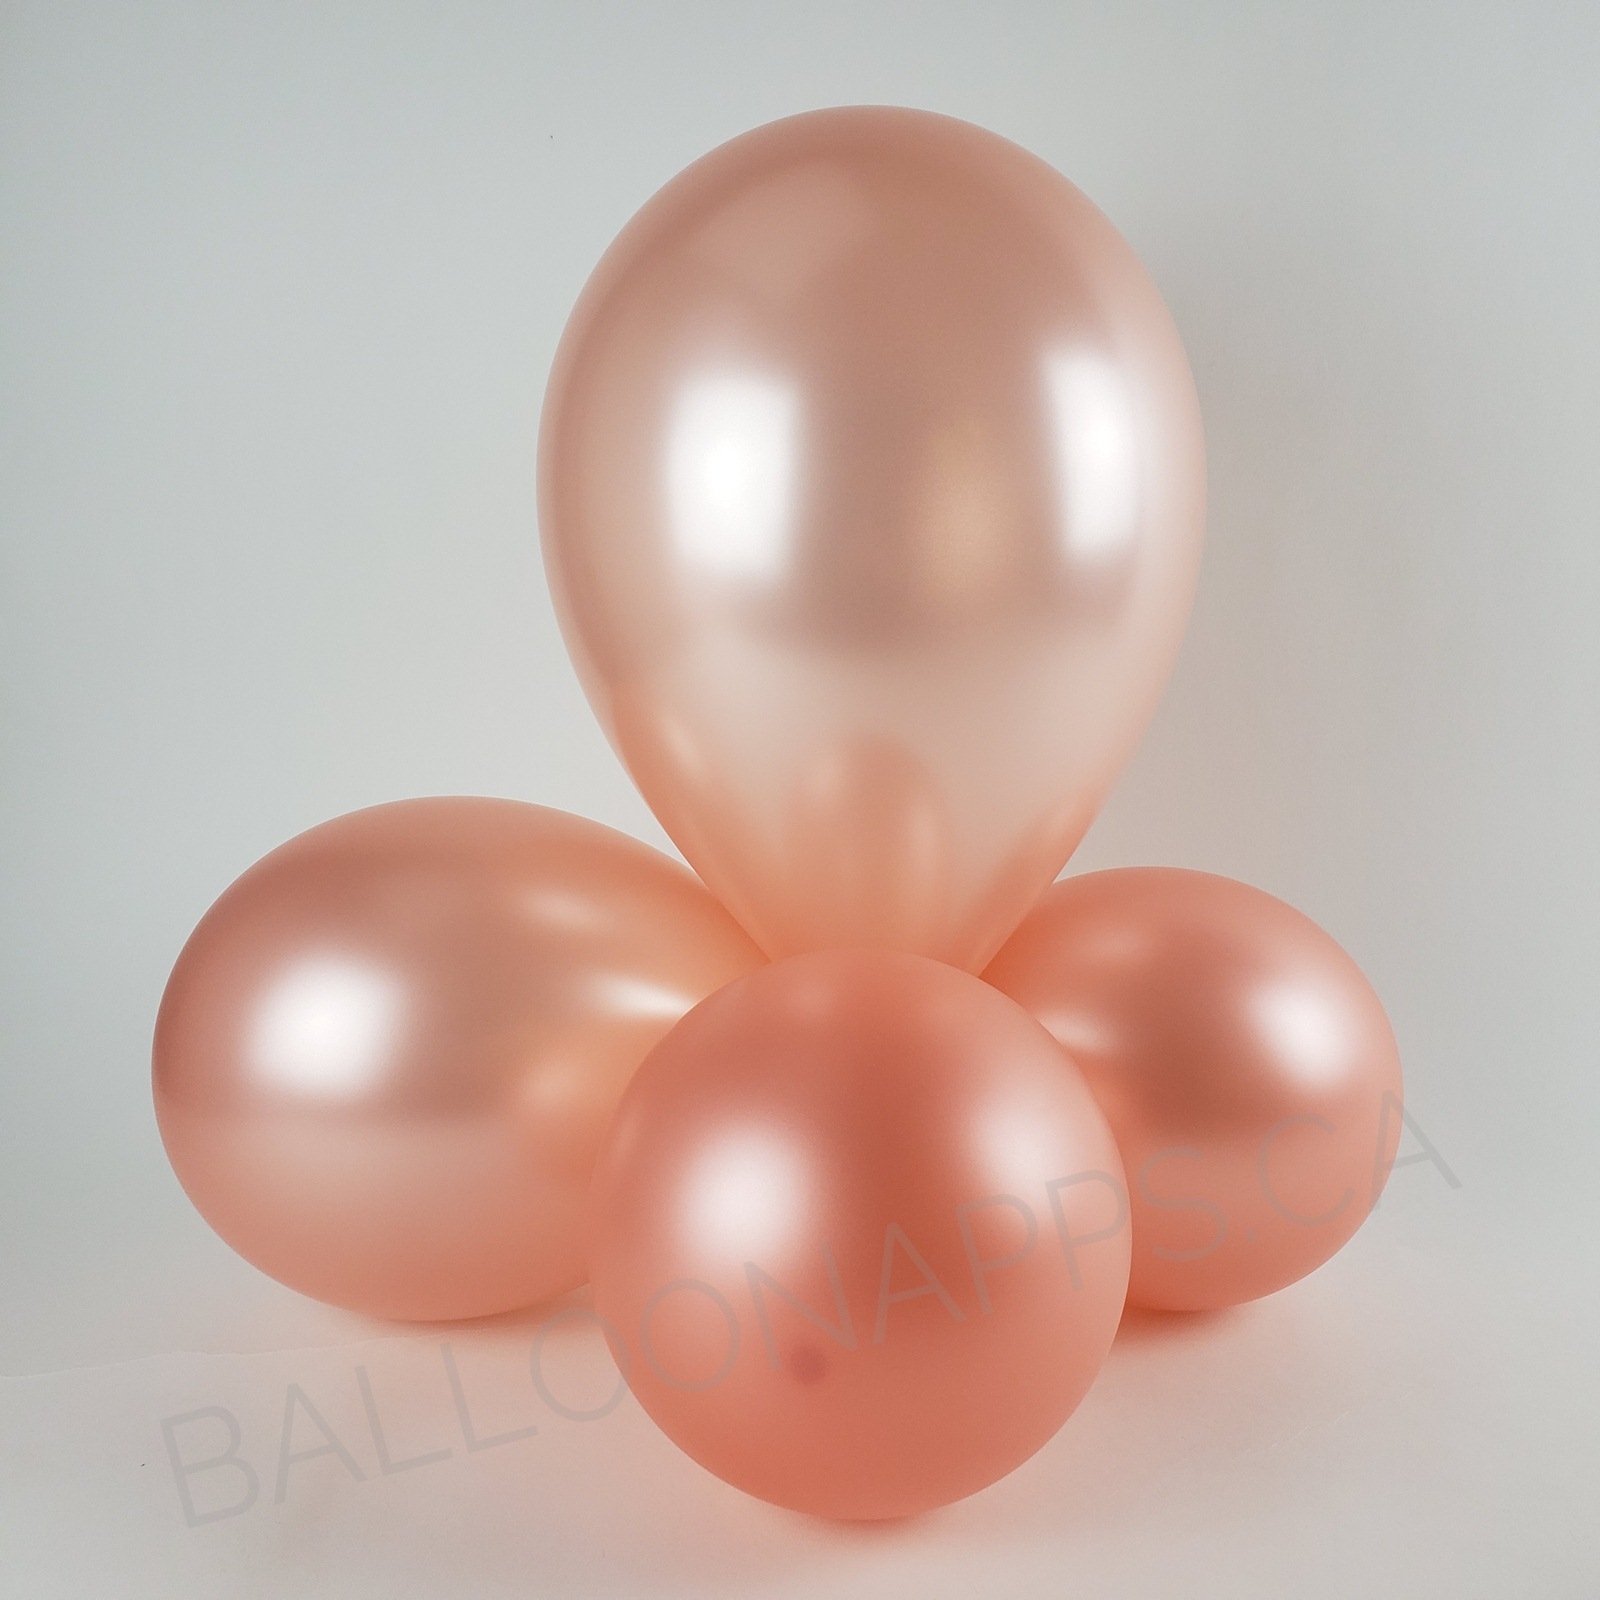 balloon texture BET (1) 24